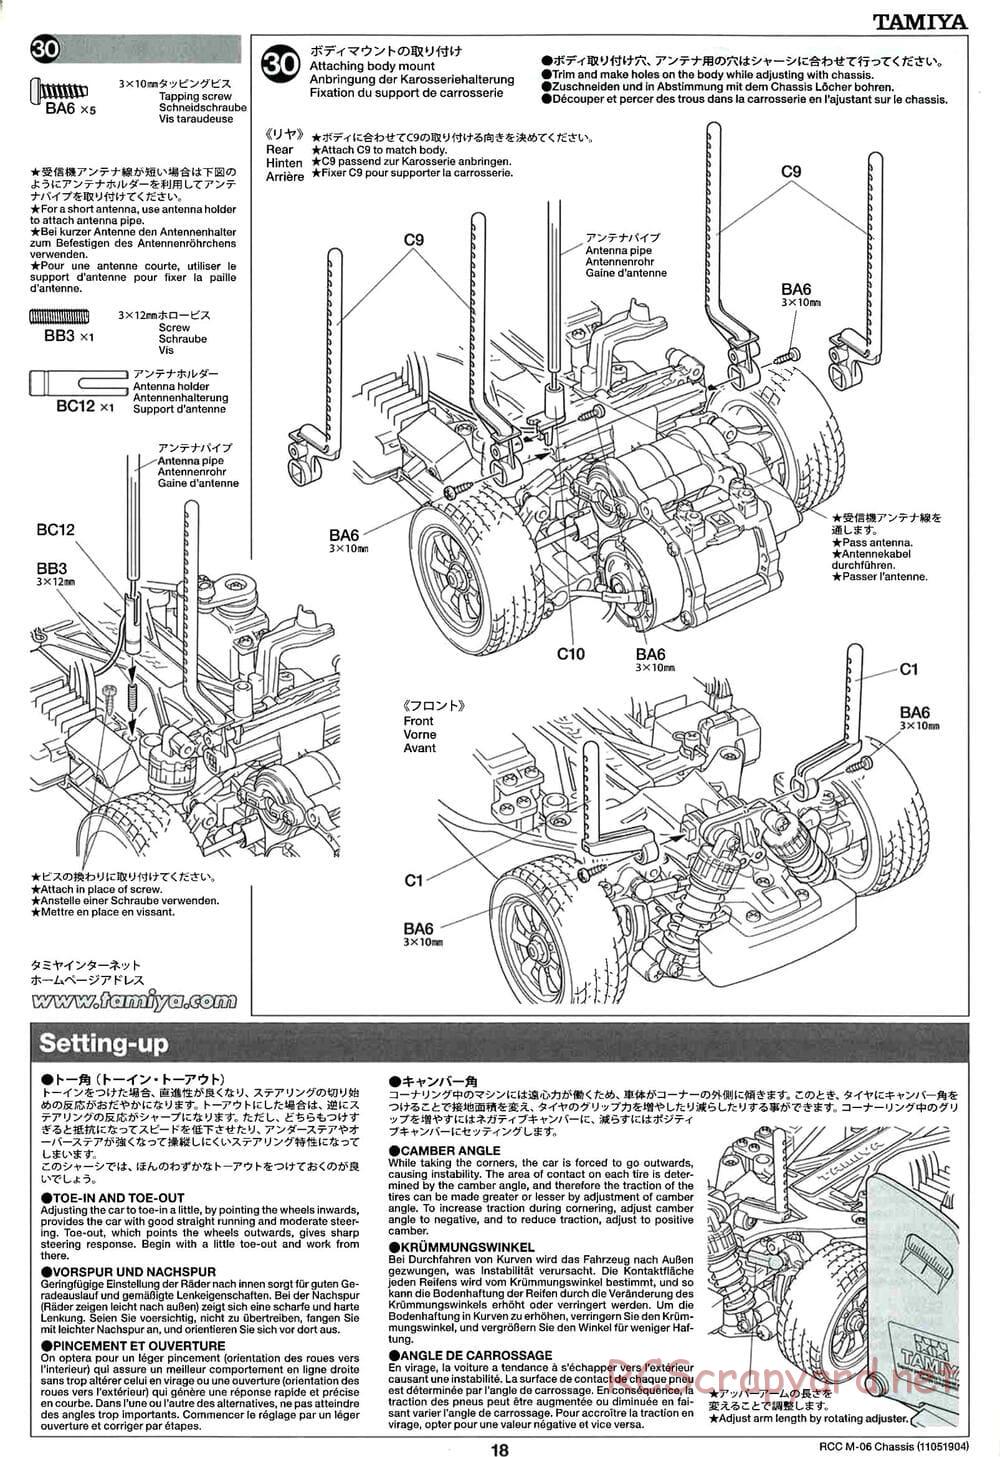 Tamiya - M-06 Chassis - Manual - Page 18